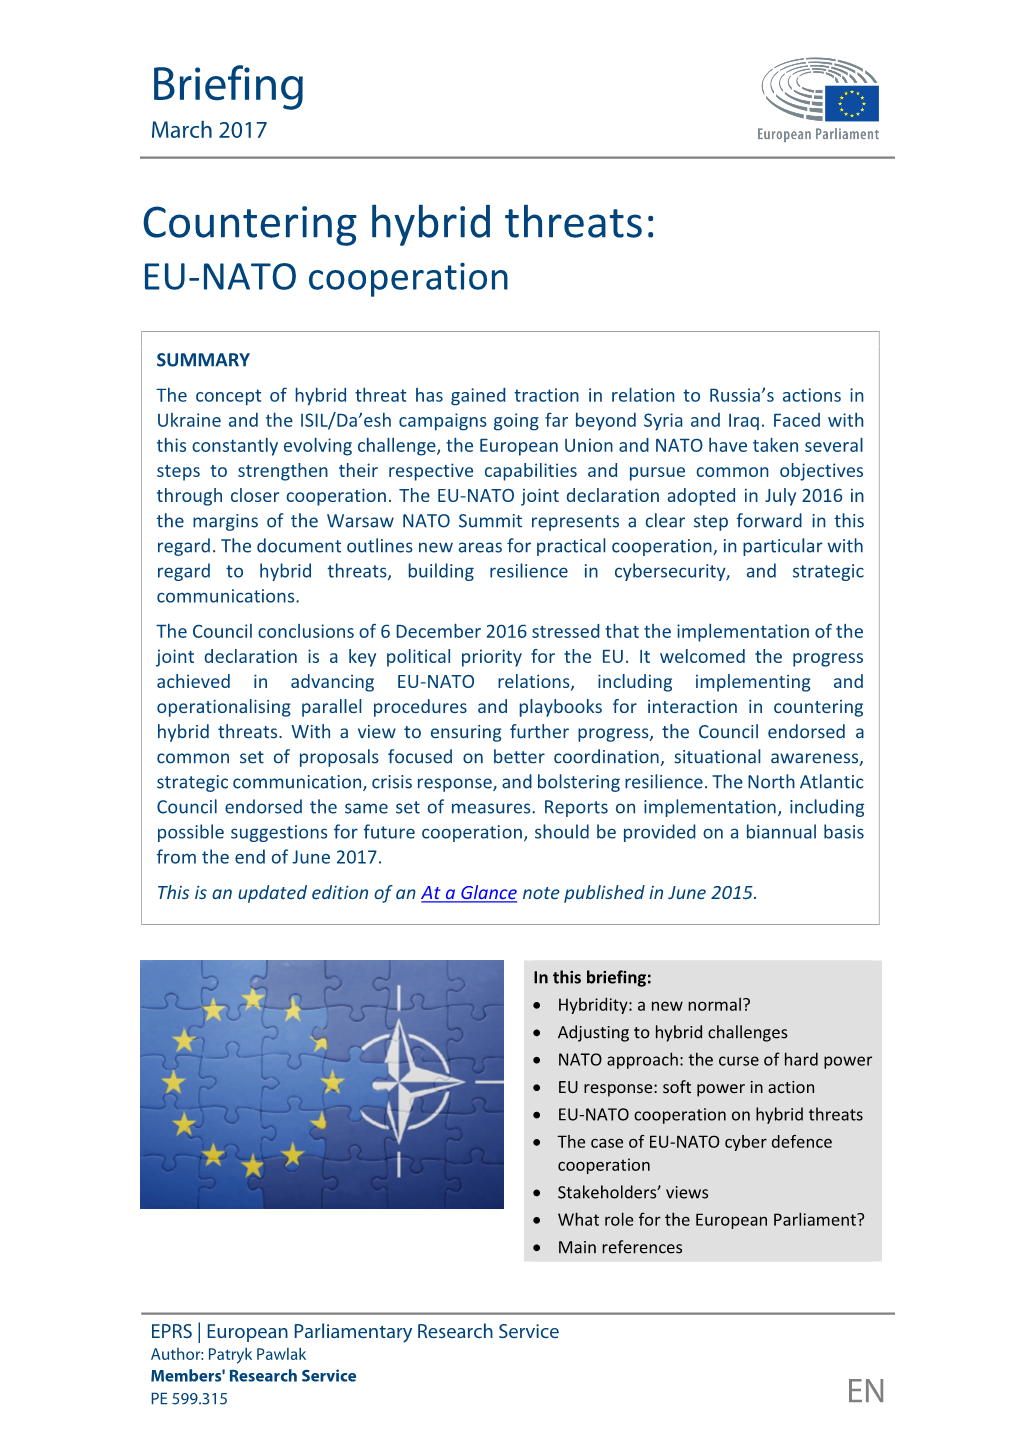 Countering Hybrid Threats: EU-NATO Cooperation